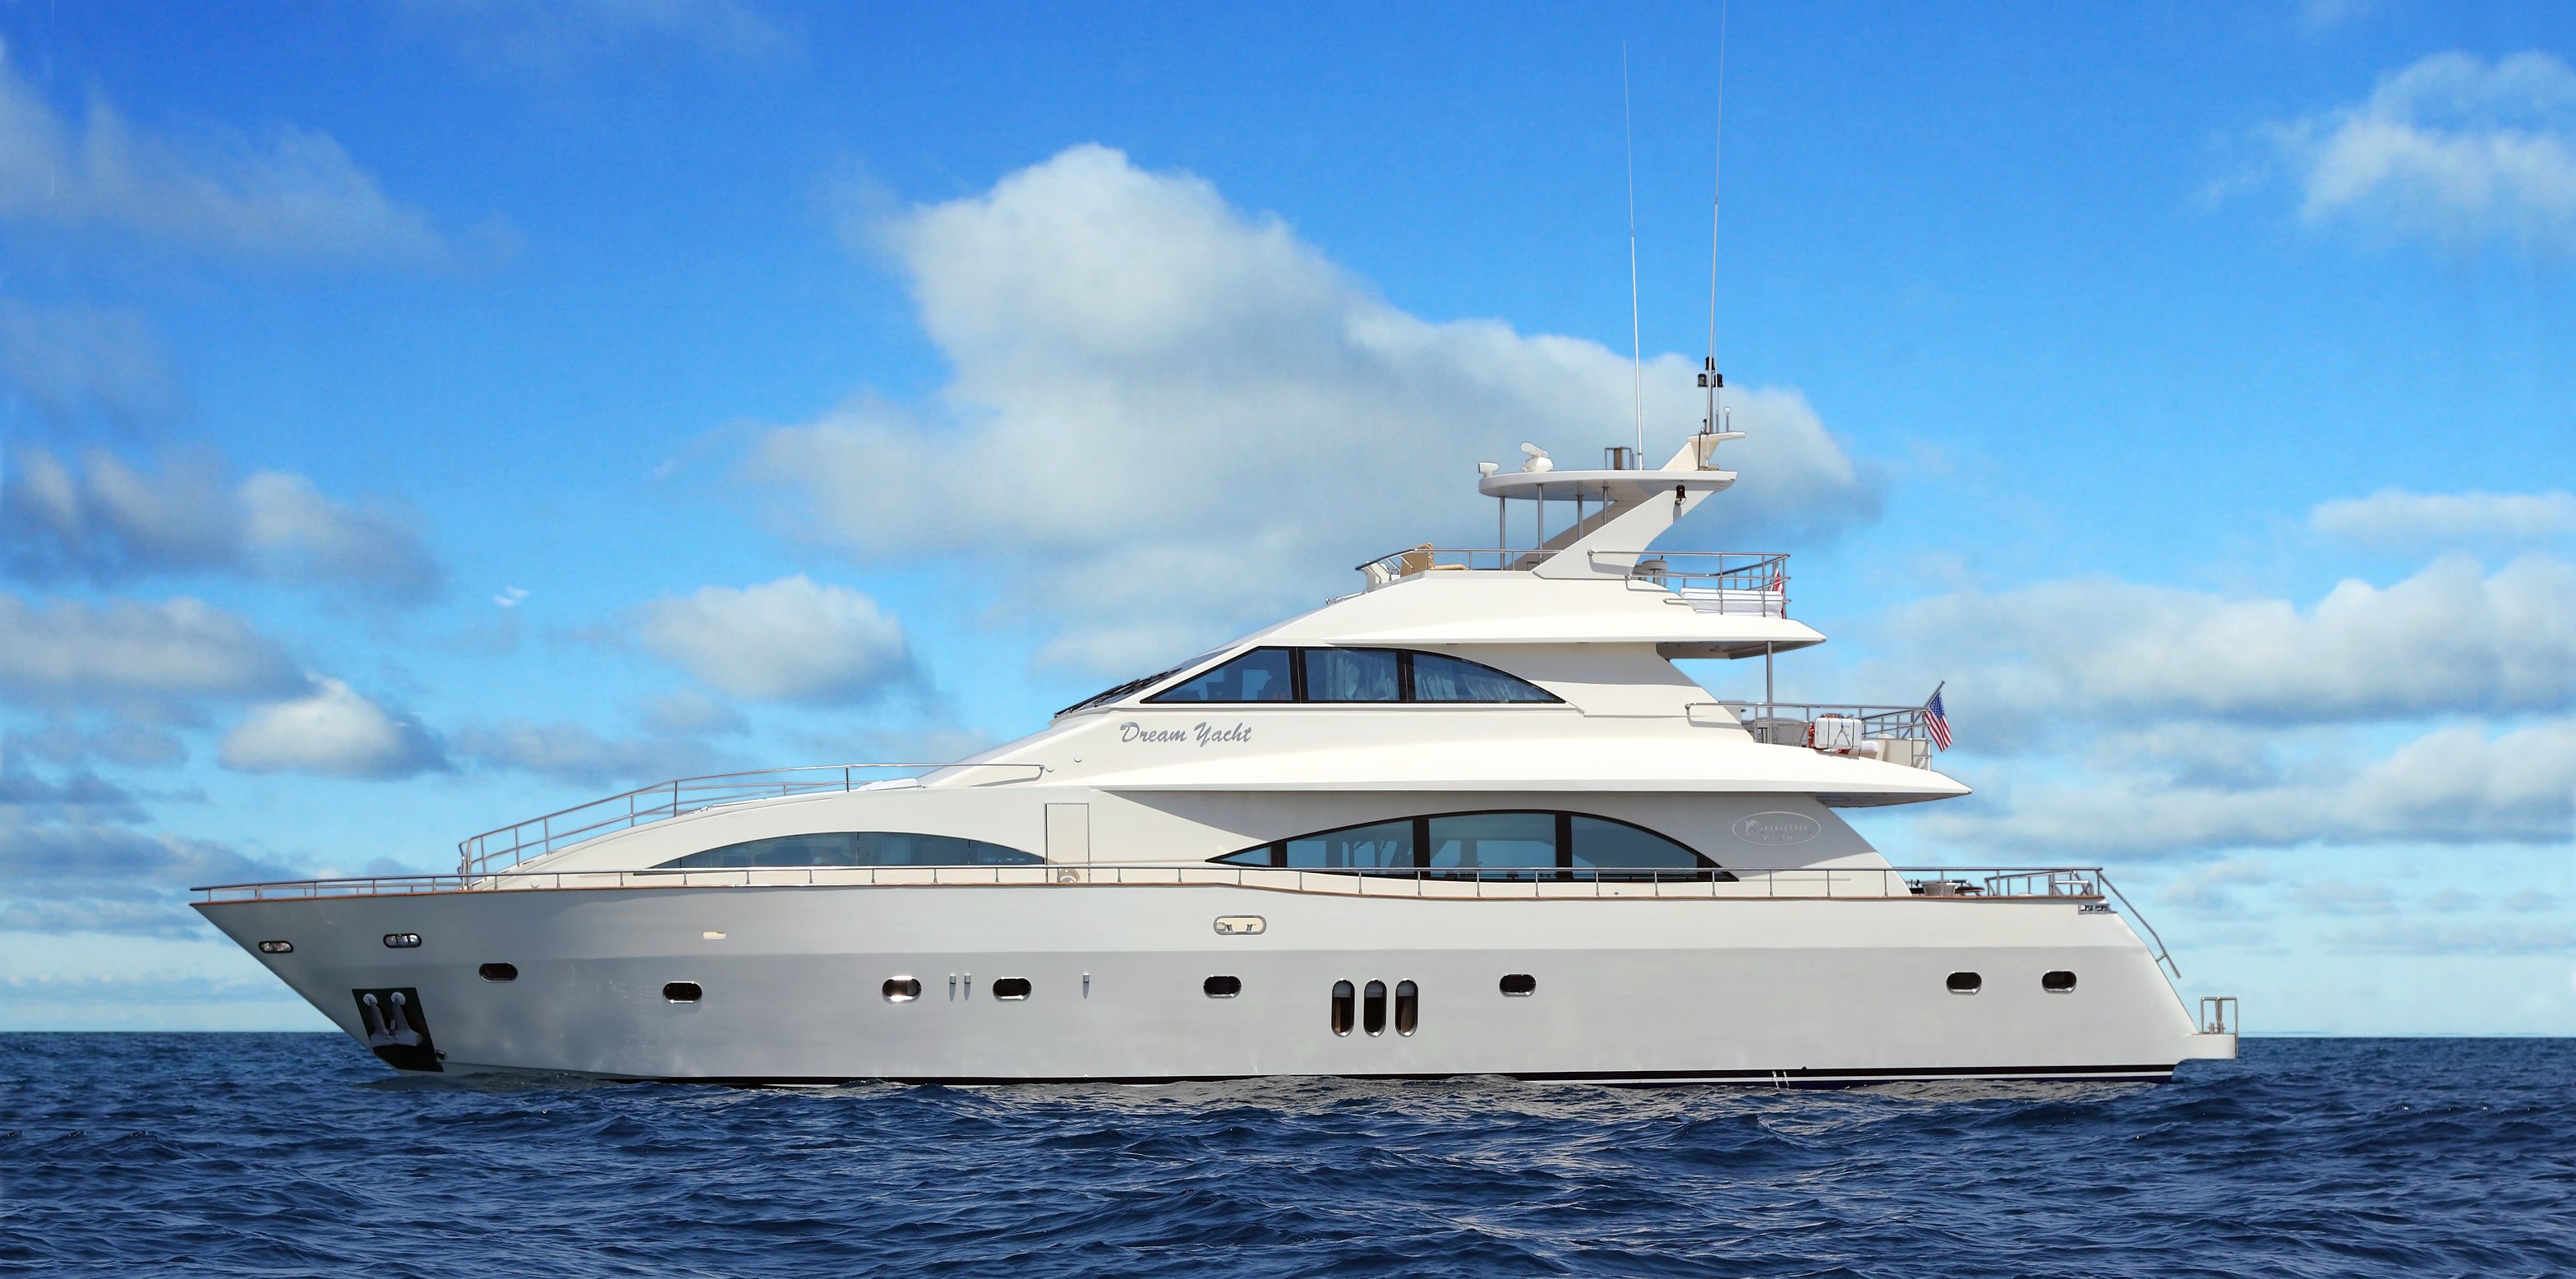 Dream Yacht charter